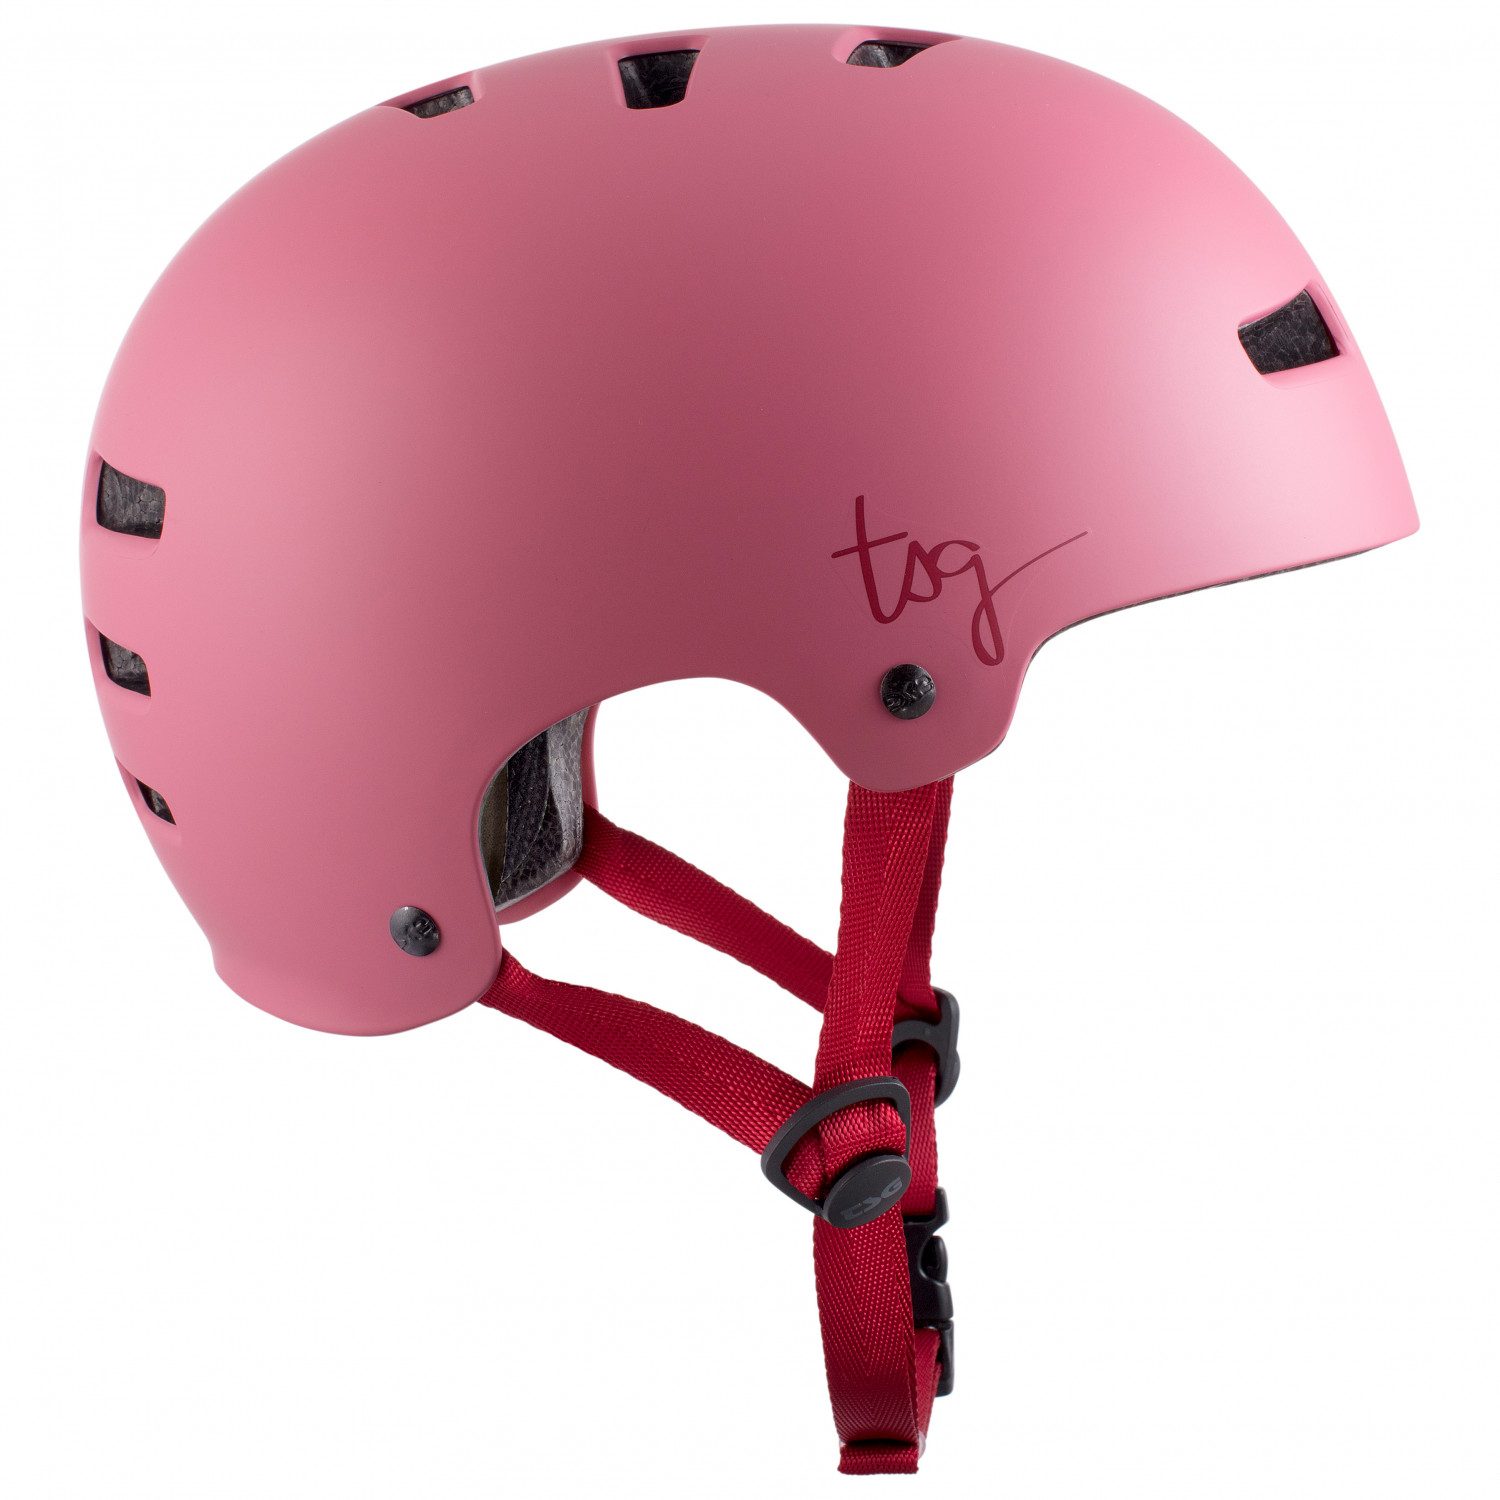 цена Велосипедный шлем Tsg Women's Evolution Solid Color, цвет Satin Sakura